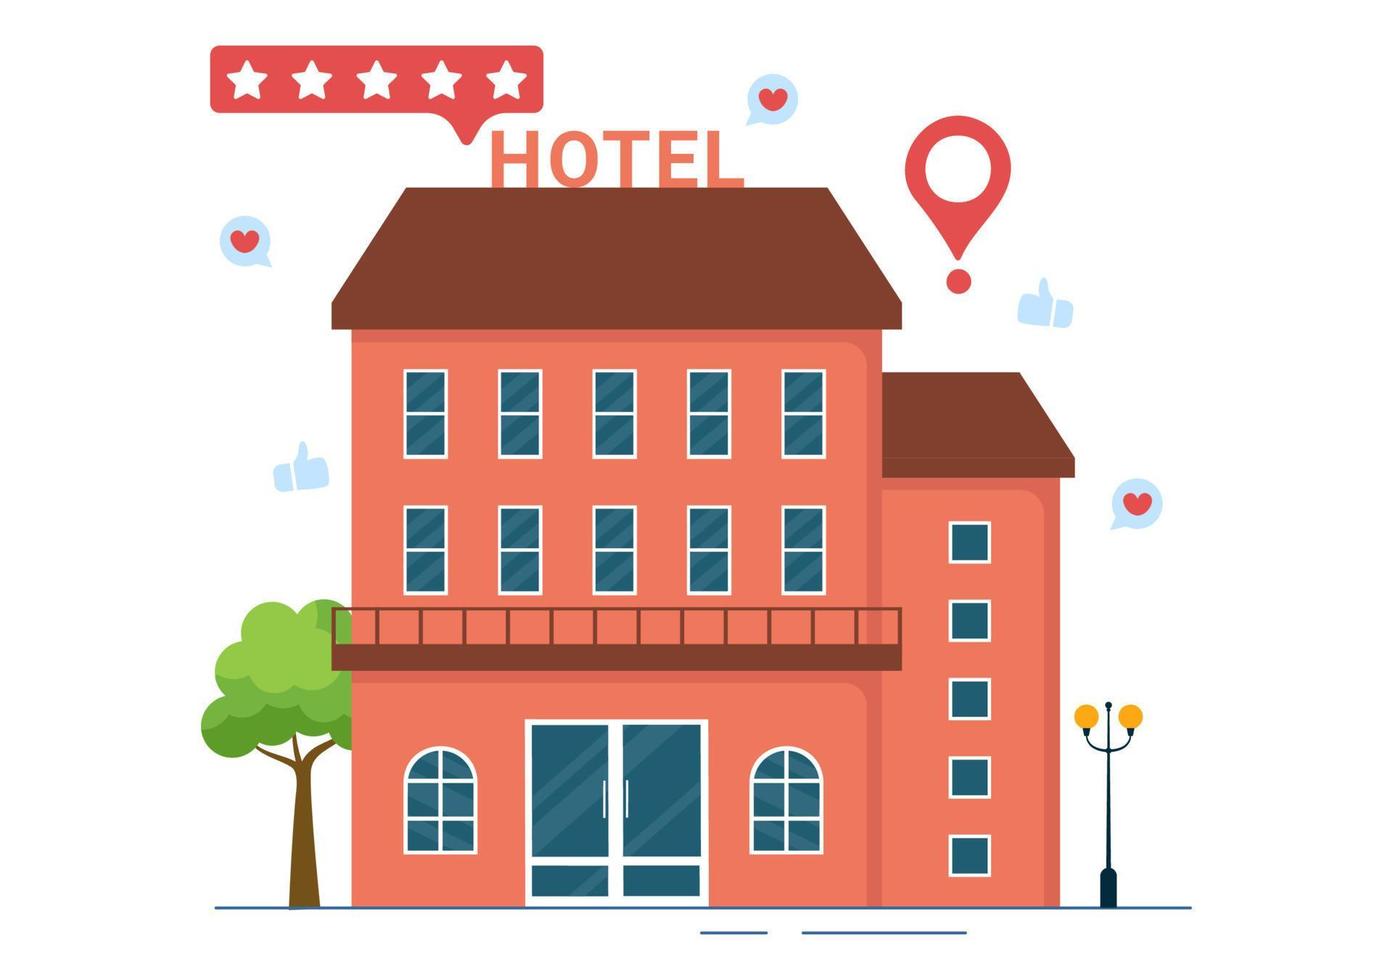 hotelbewertung mit bewertungsservice, benutzerzufriedenheit für bewertete kunden, produkte oder erfahrungen in flachen handgezeichneten karikaturvorlagenillustrationen vektor